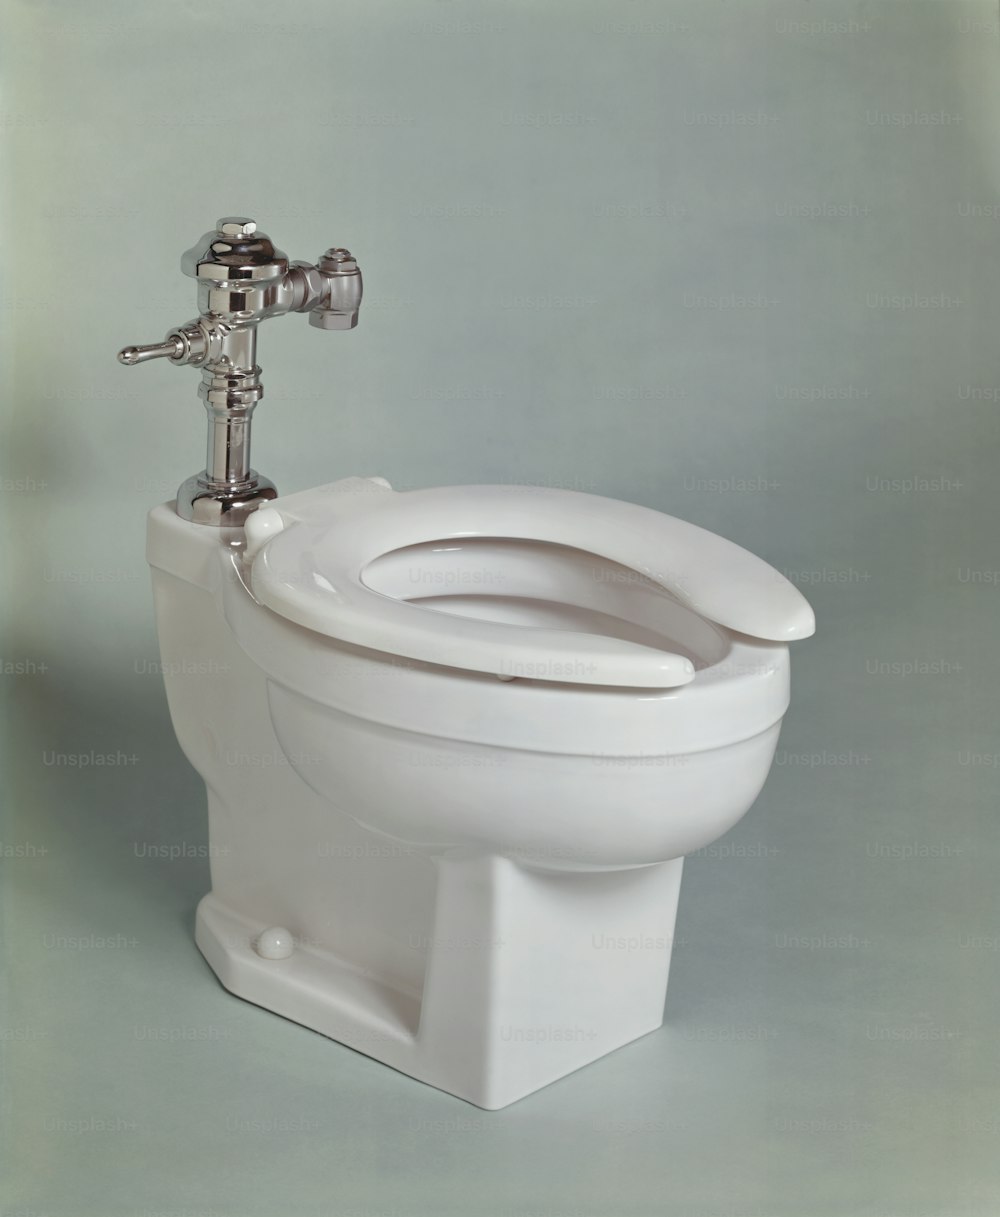 eine Nahaufnahme einer Toilette mit einem Wasserhahn